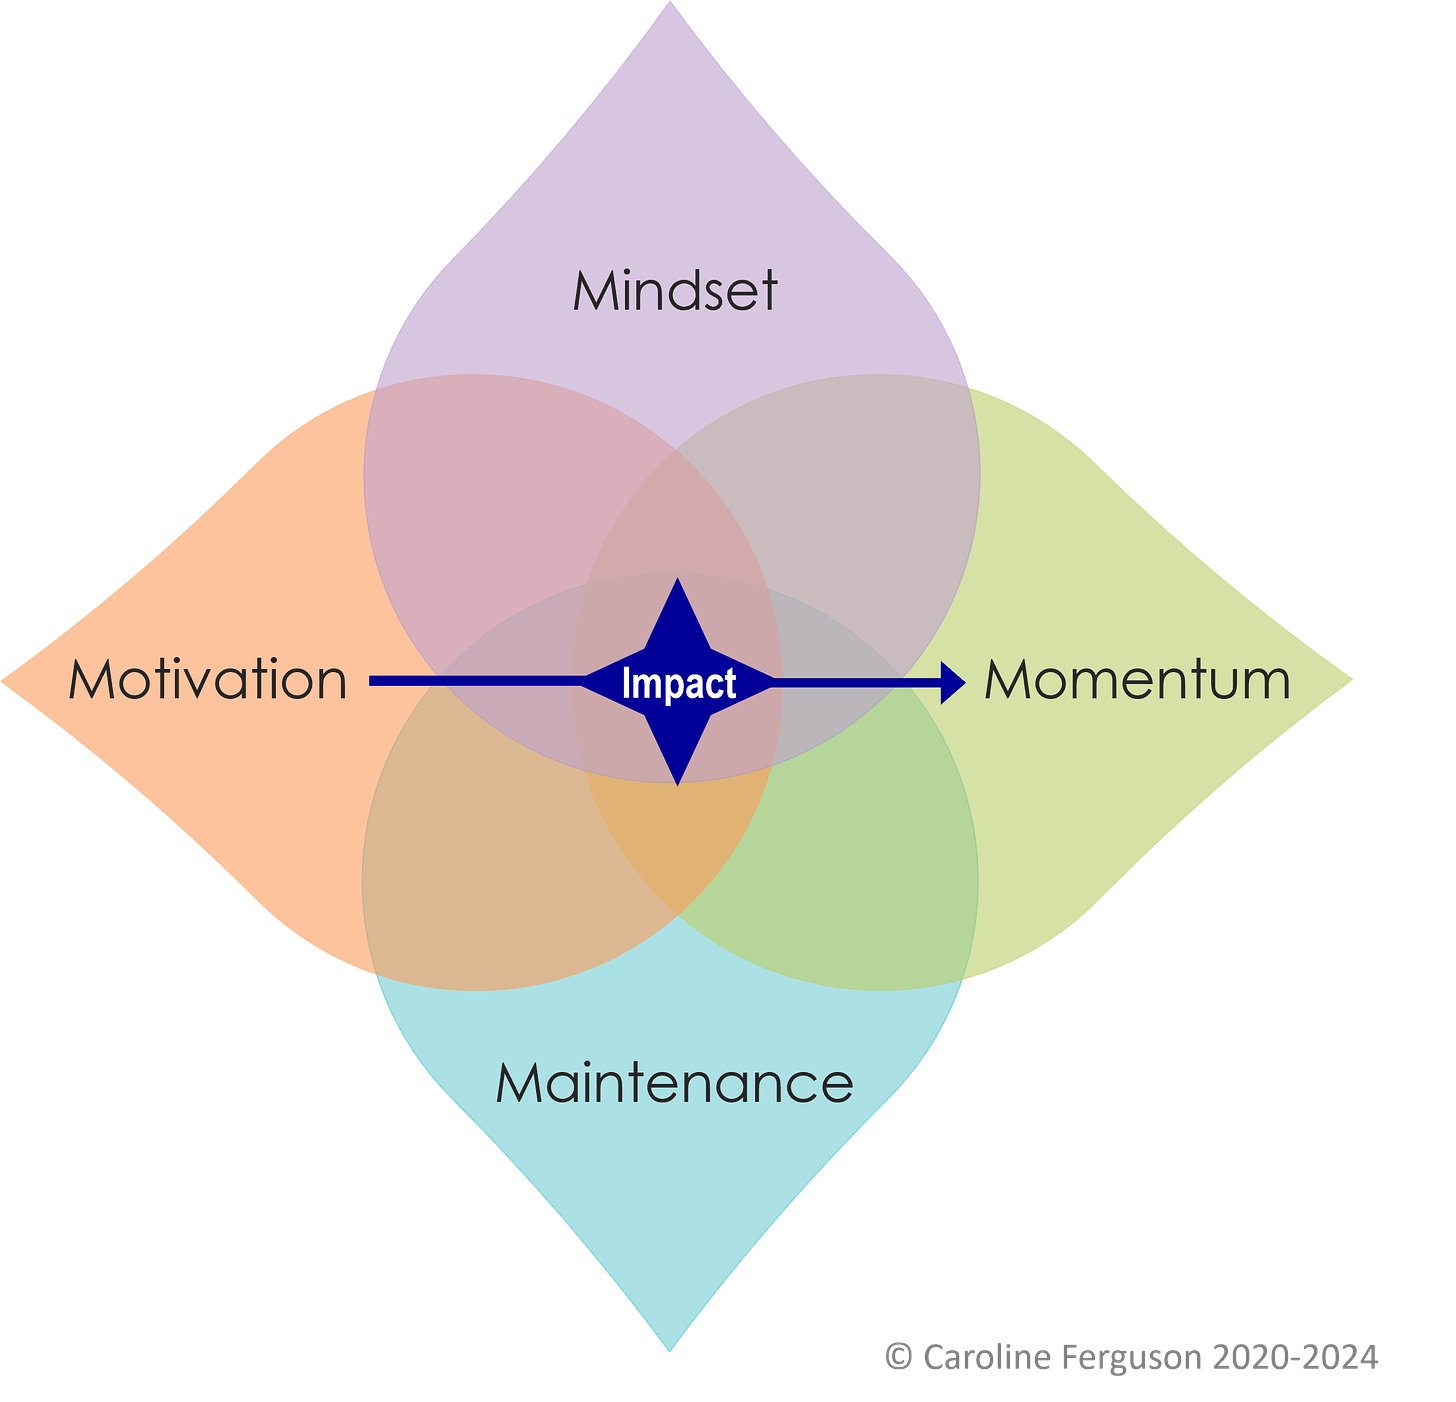 Model showing mindset, maintenance, motivation and momentum leading to impact